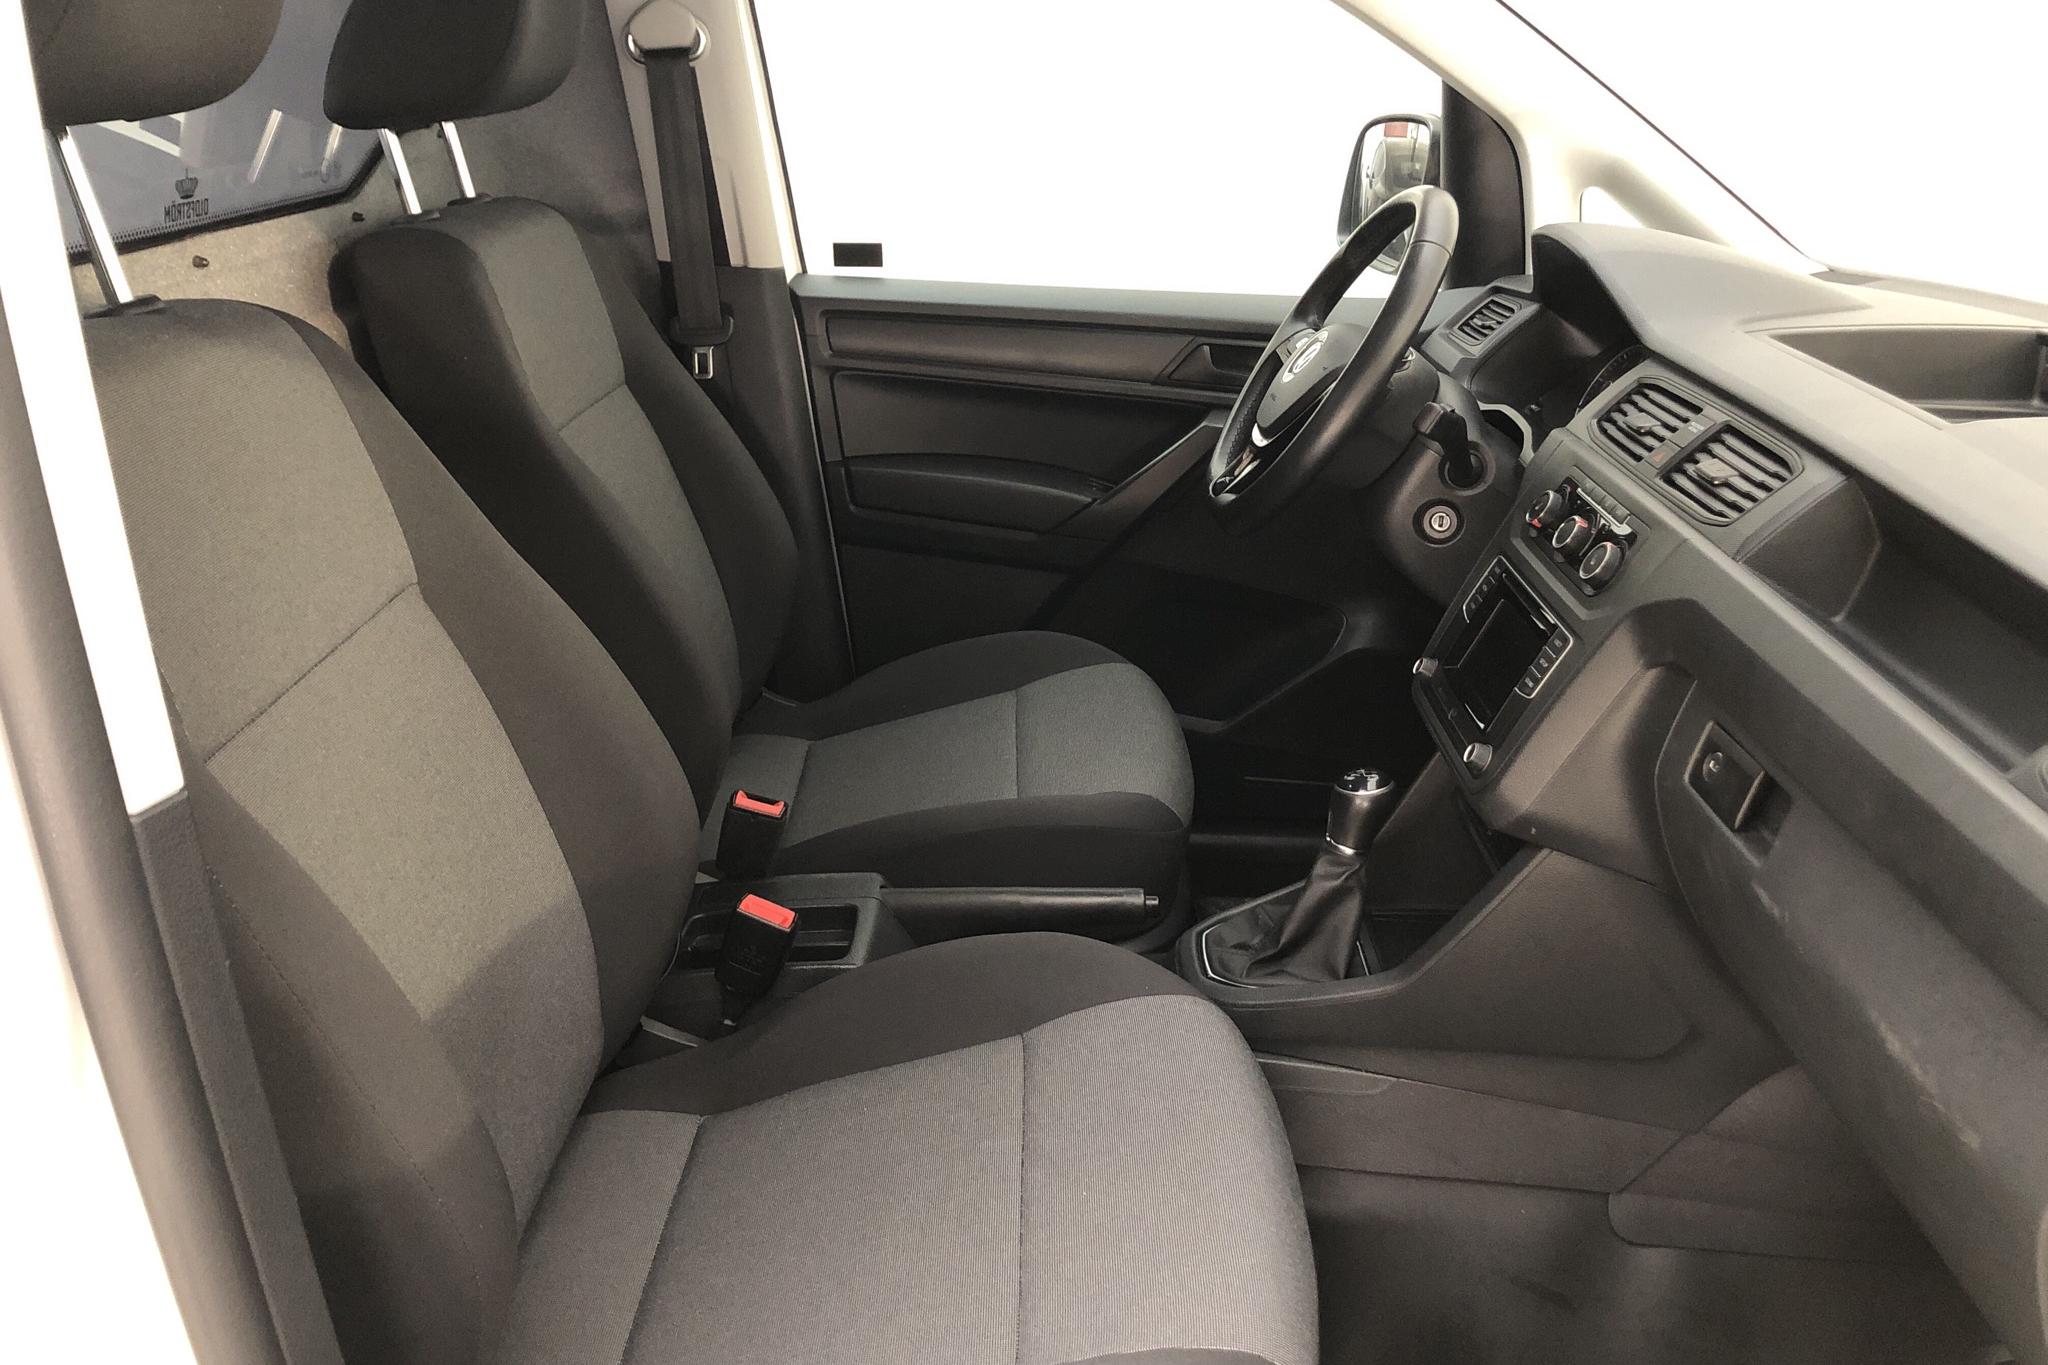 VW Caddy 2.0 TDI Skåp (102hk) - 8 597 mil - Manuell - vit - 2019